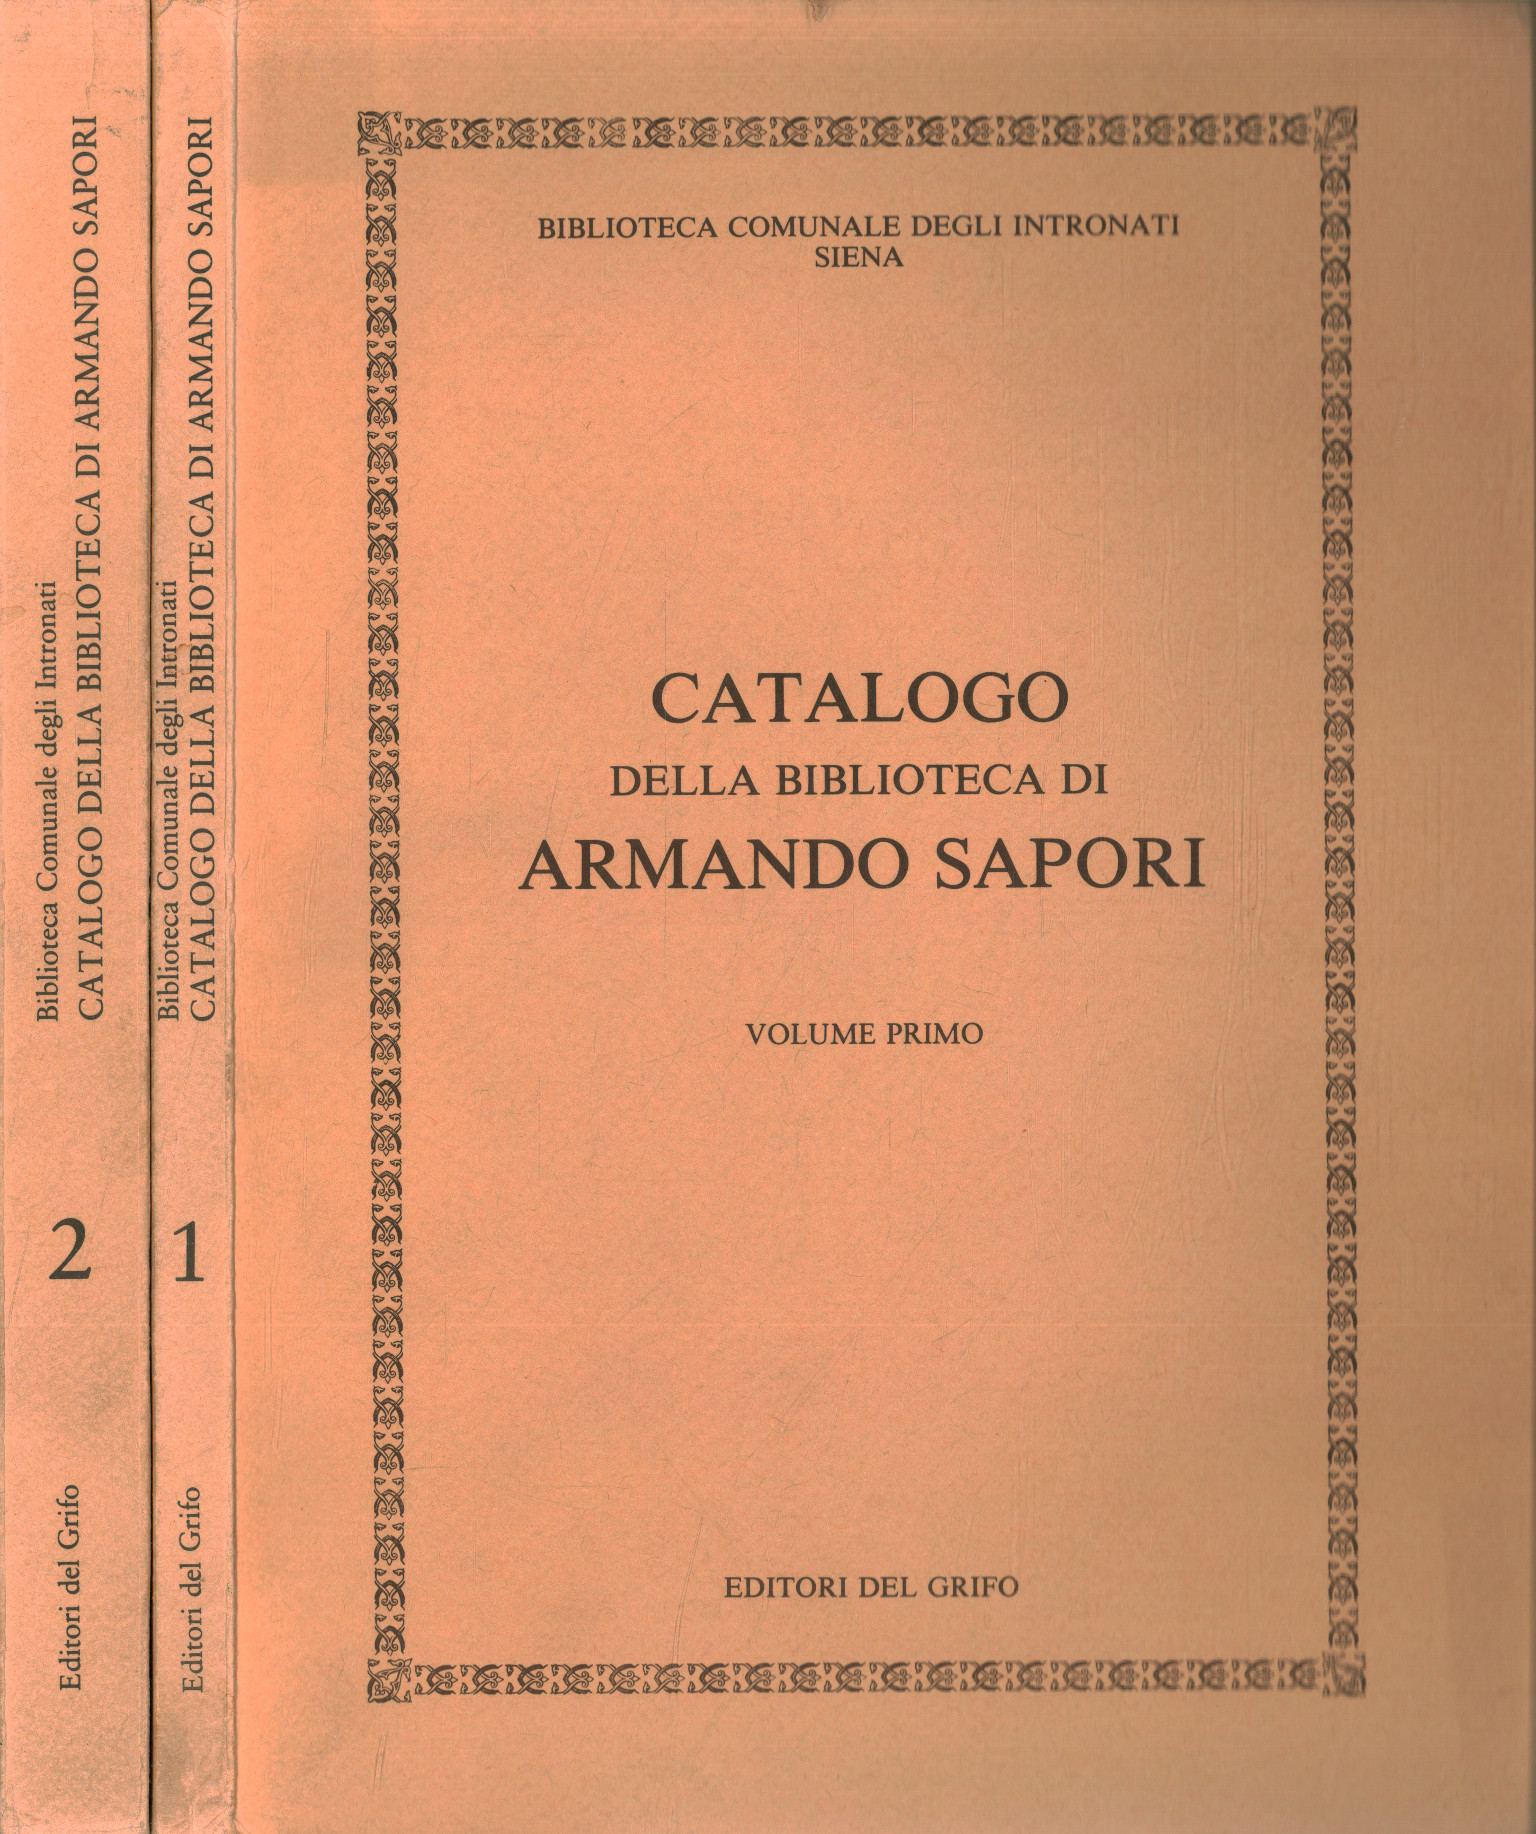 Catalog of the Armando Sap library